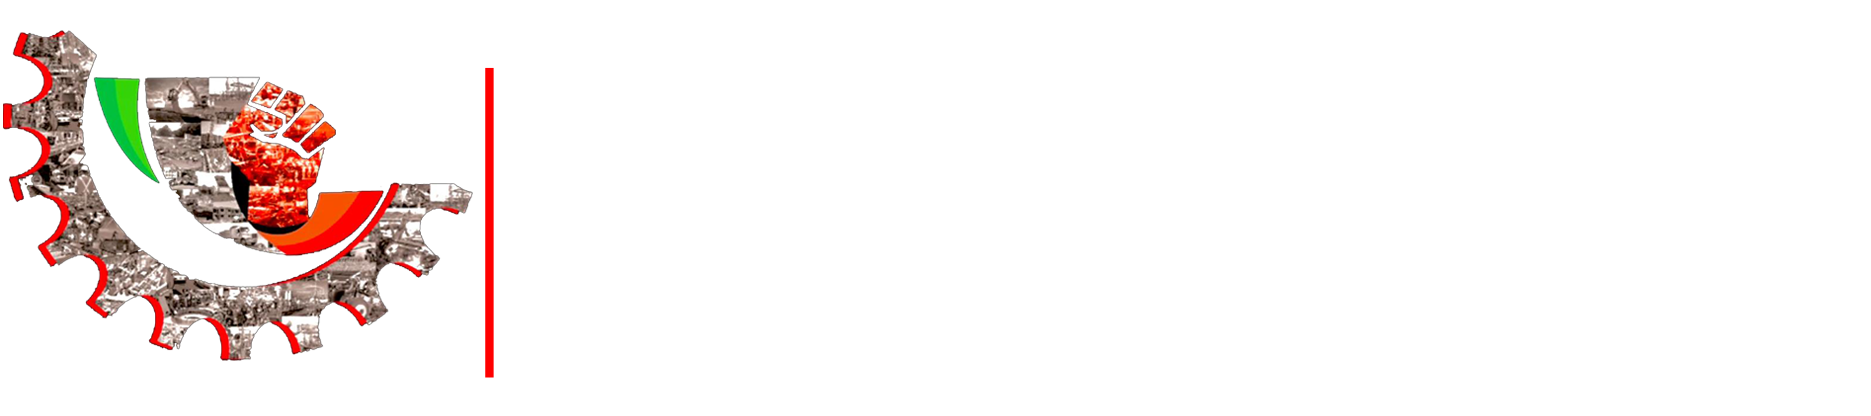 Sindicatos Unidos de México